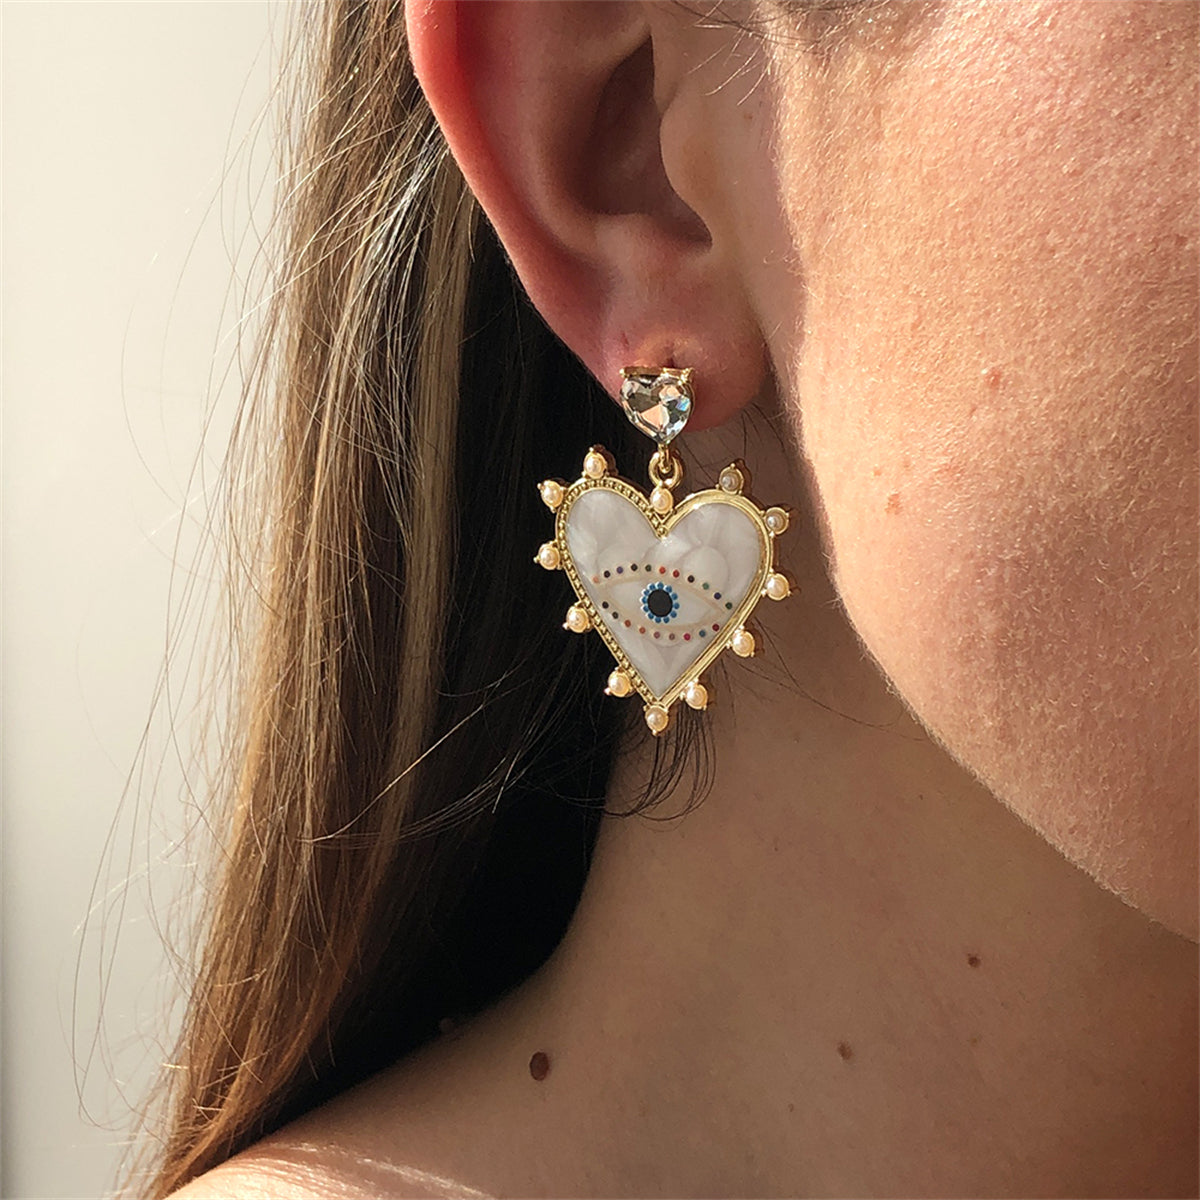 White Enamel & Crystal Pearl 18K Gold-Plated Eye Heart Drop Earrings